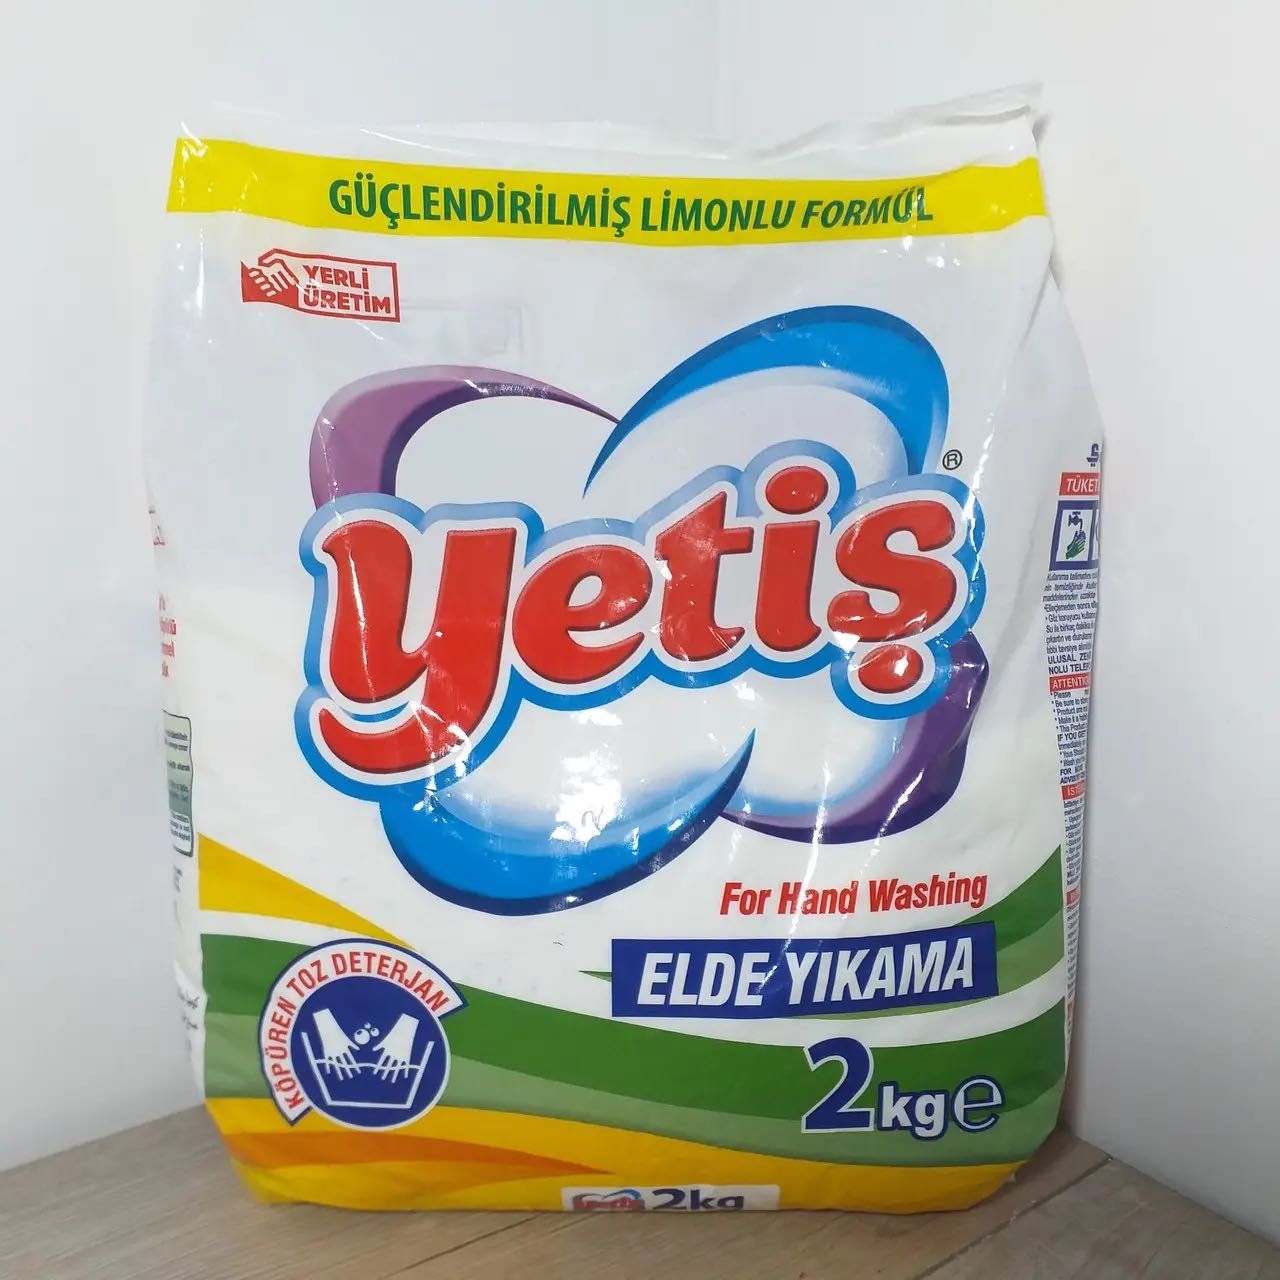 Качественный стиральный порошок Yetis 2кг, Турция.